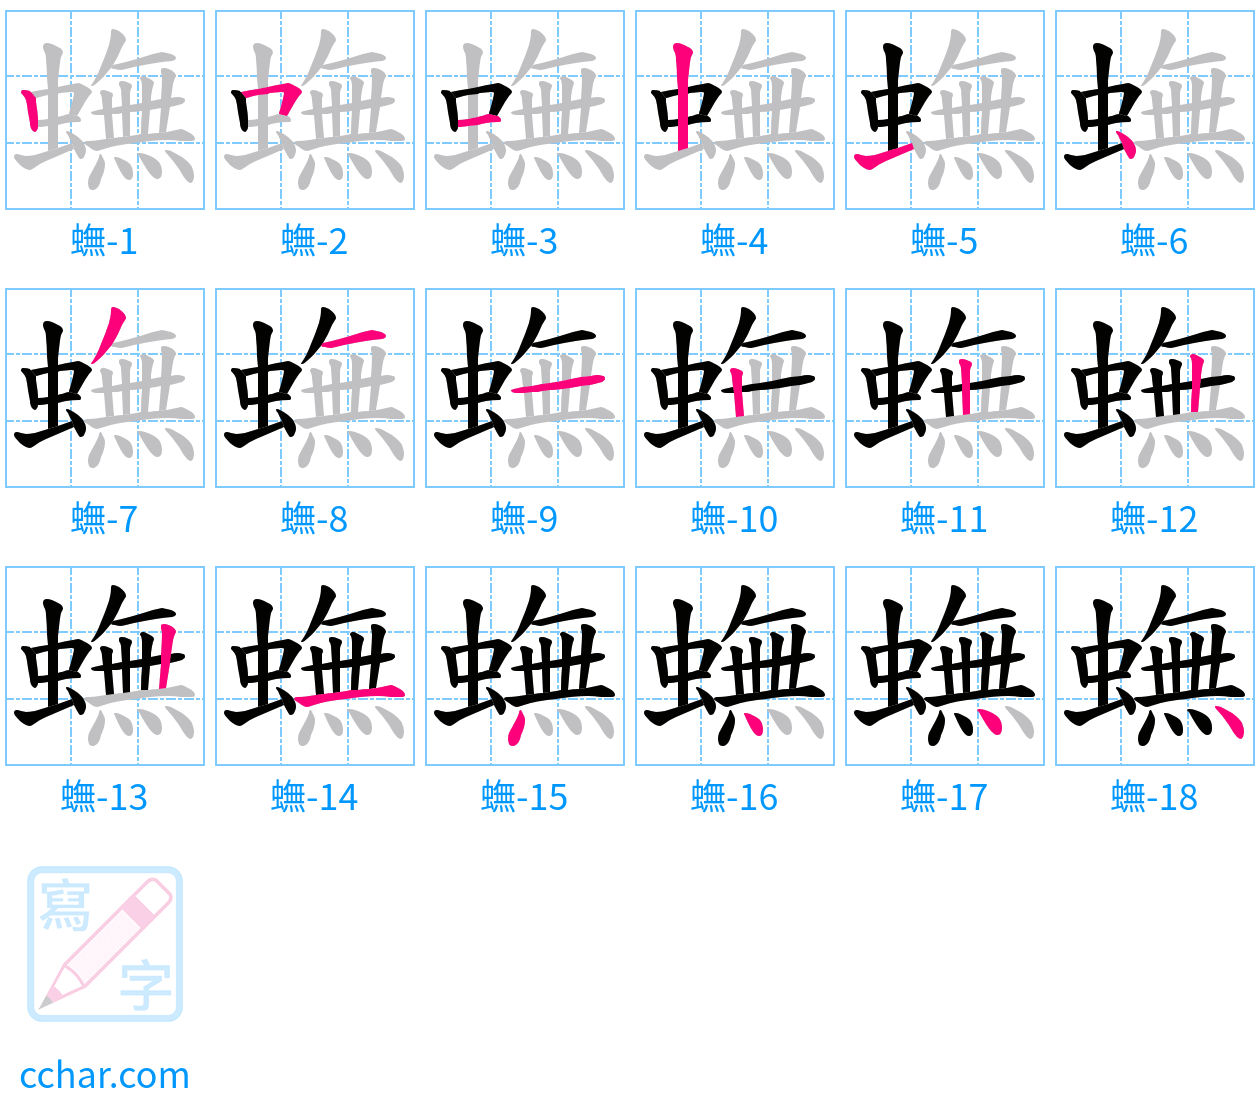 蟱 stroke order step-by-step diagram